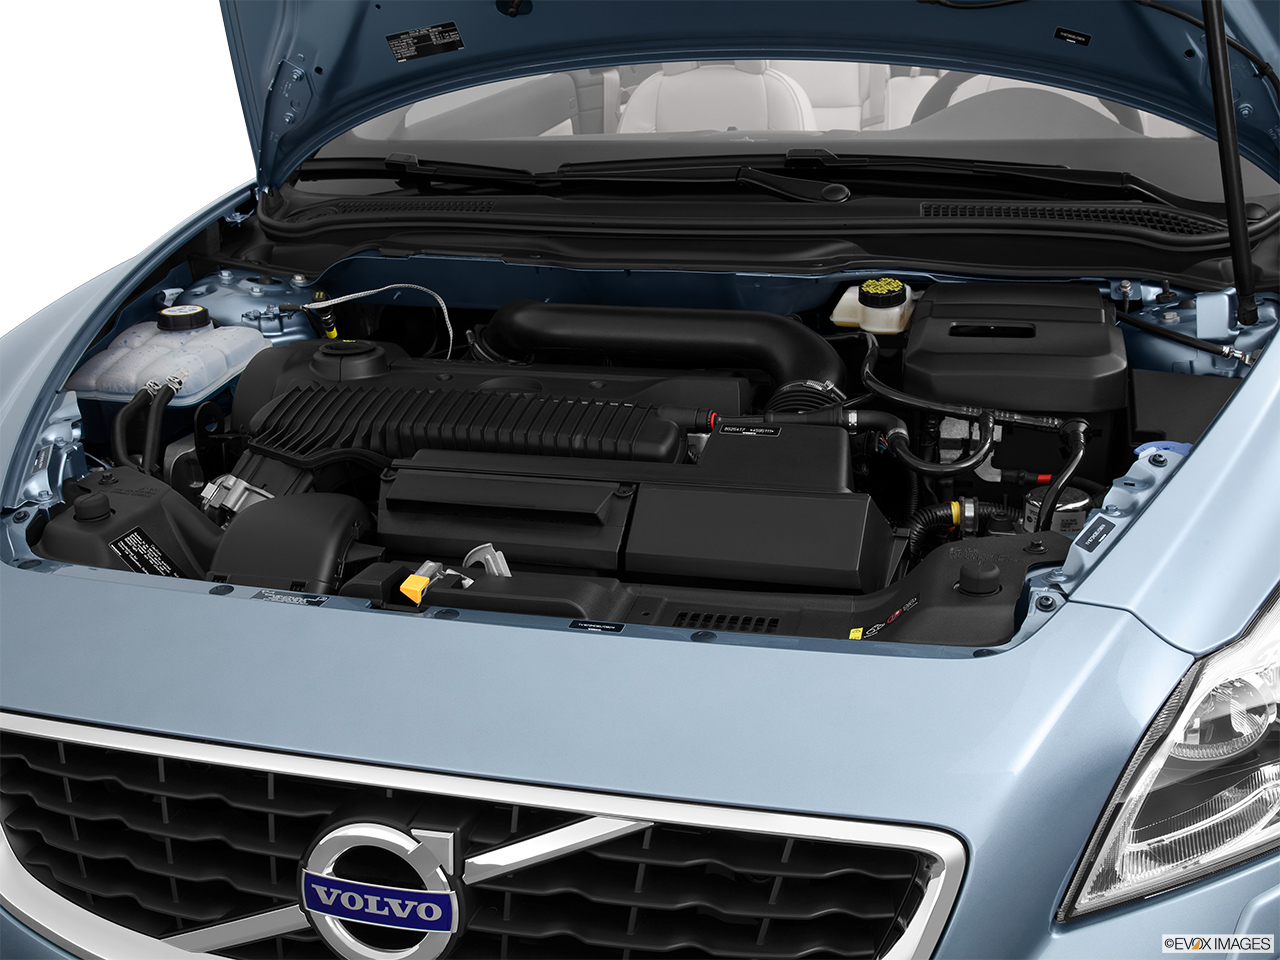 2013 Volvo C70 T5 Platinum Engine. 